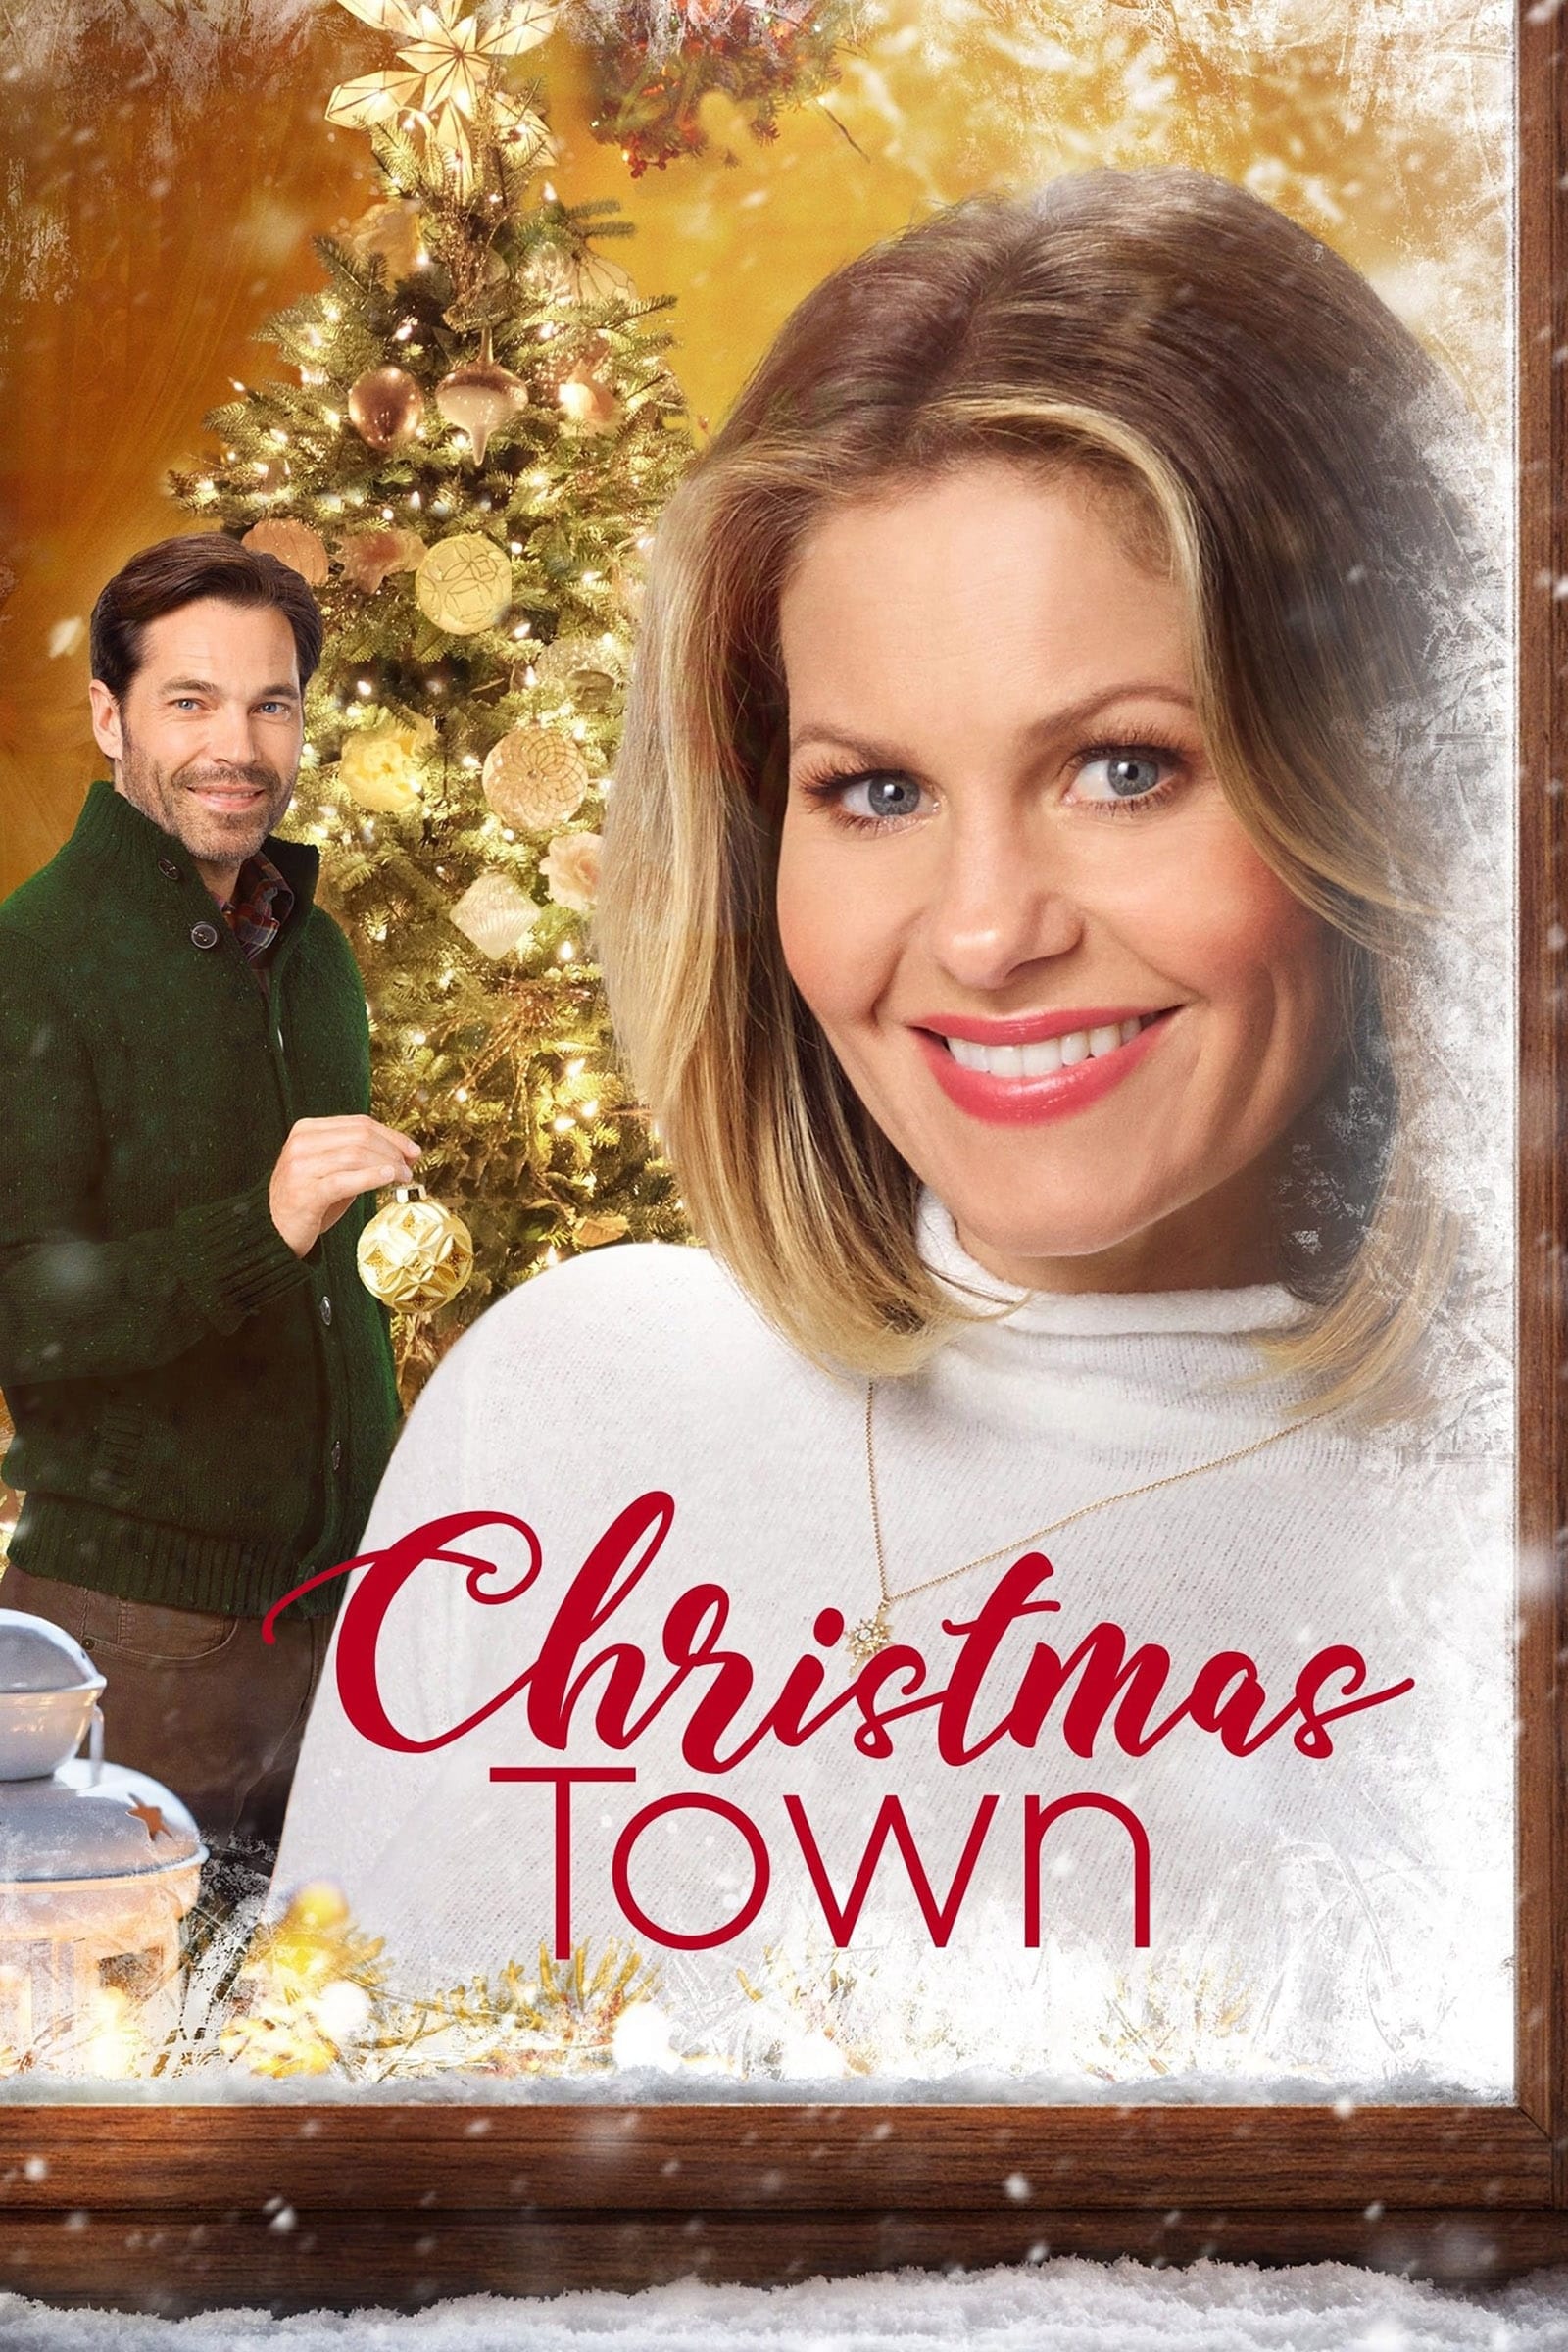 Christmas Town (2019)